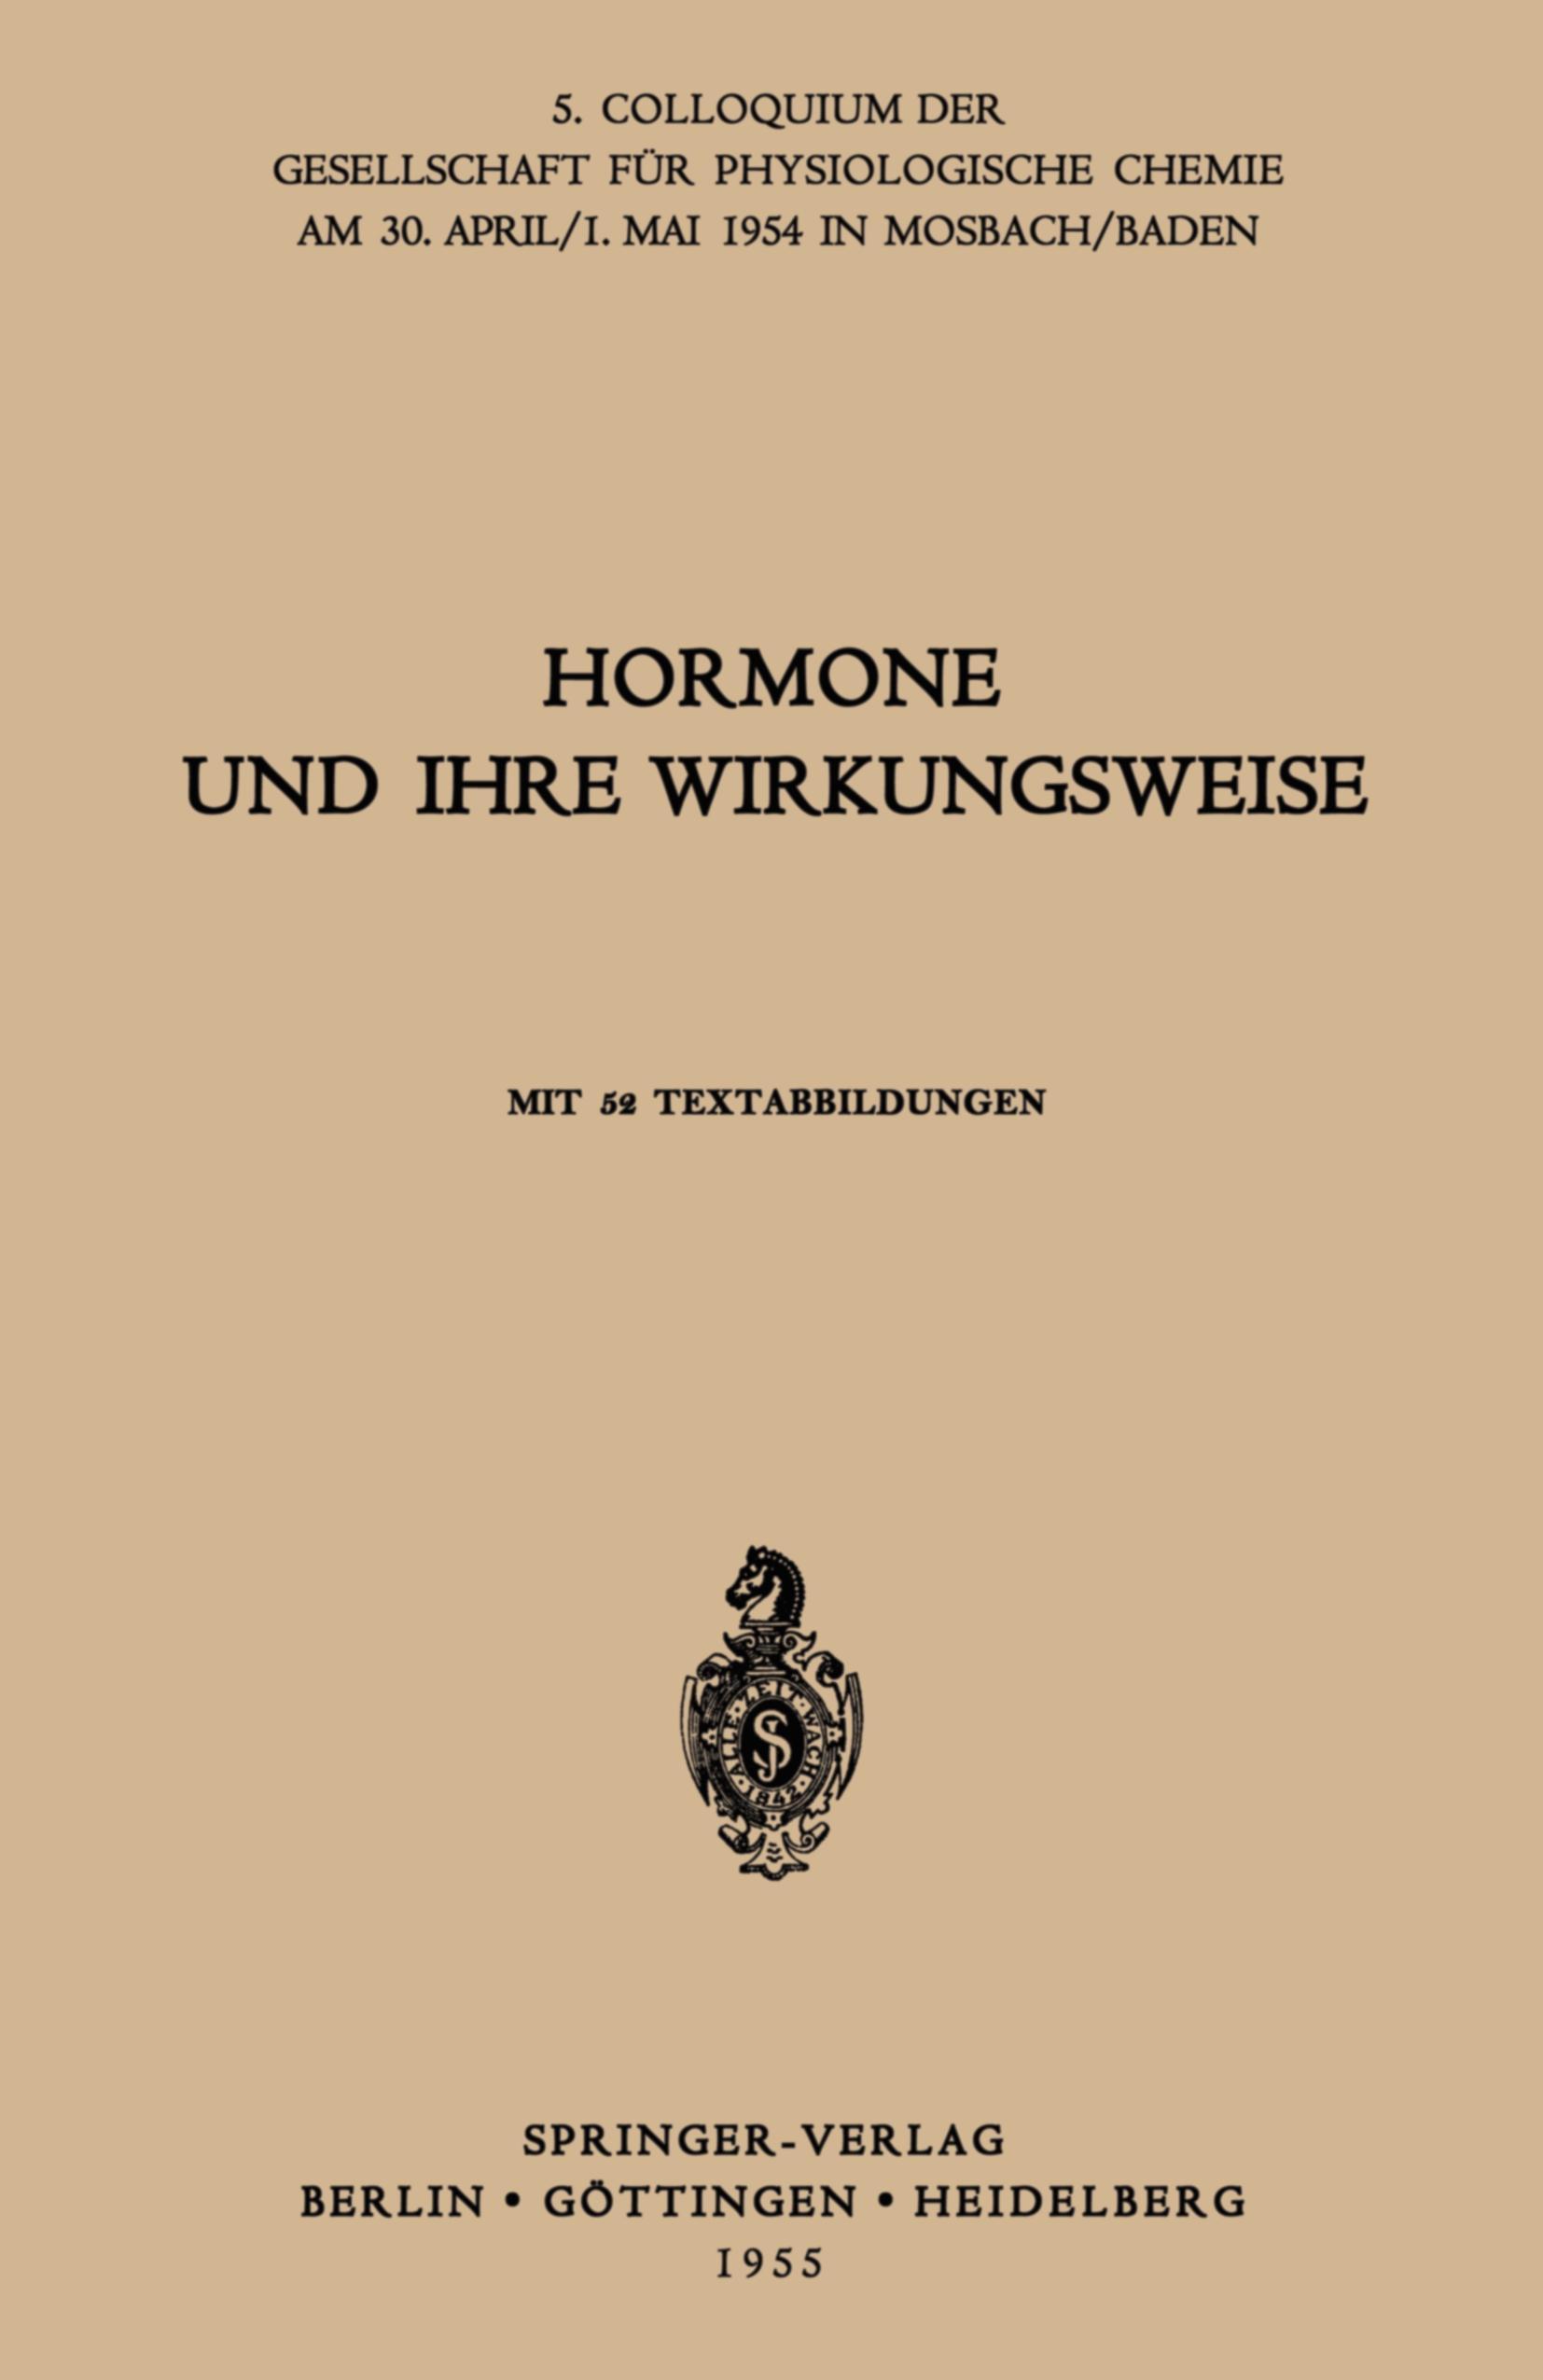 Hormone und ihre Wirkungsweise - G. Koller|H. E. Voss|H. Tuchmann-Duplessis|Christian de Duve|C. Martius|W. Dirscherl|Hj. Staudinger|H. J. Hübener